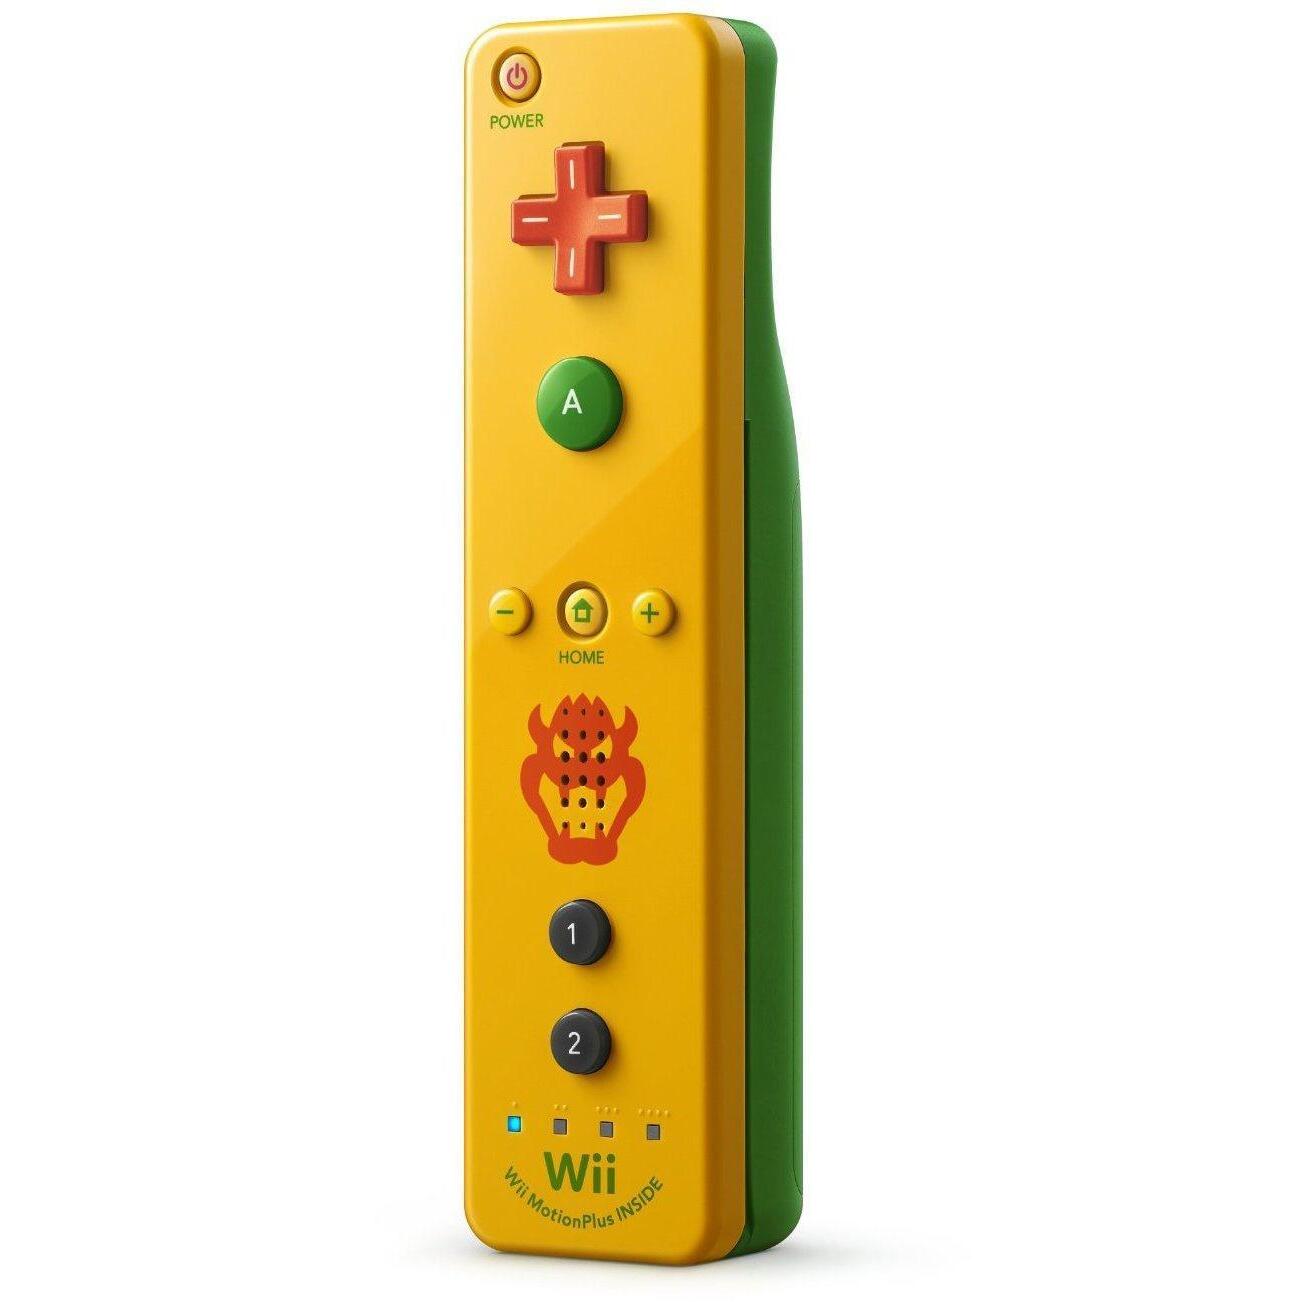 methaan Overeenkomend bom Originele Wii / Wii U Controller Motion Plus Geel / Groen - Bowser Editie -  Nintendo (Wii U) kopen - €51